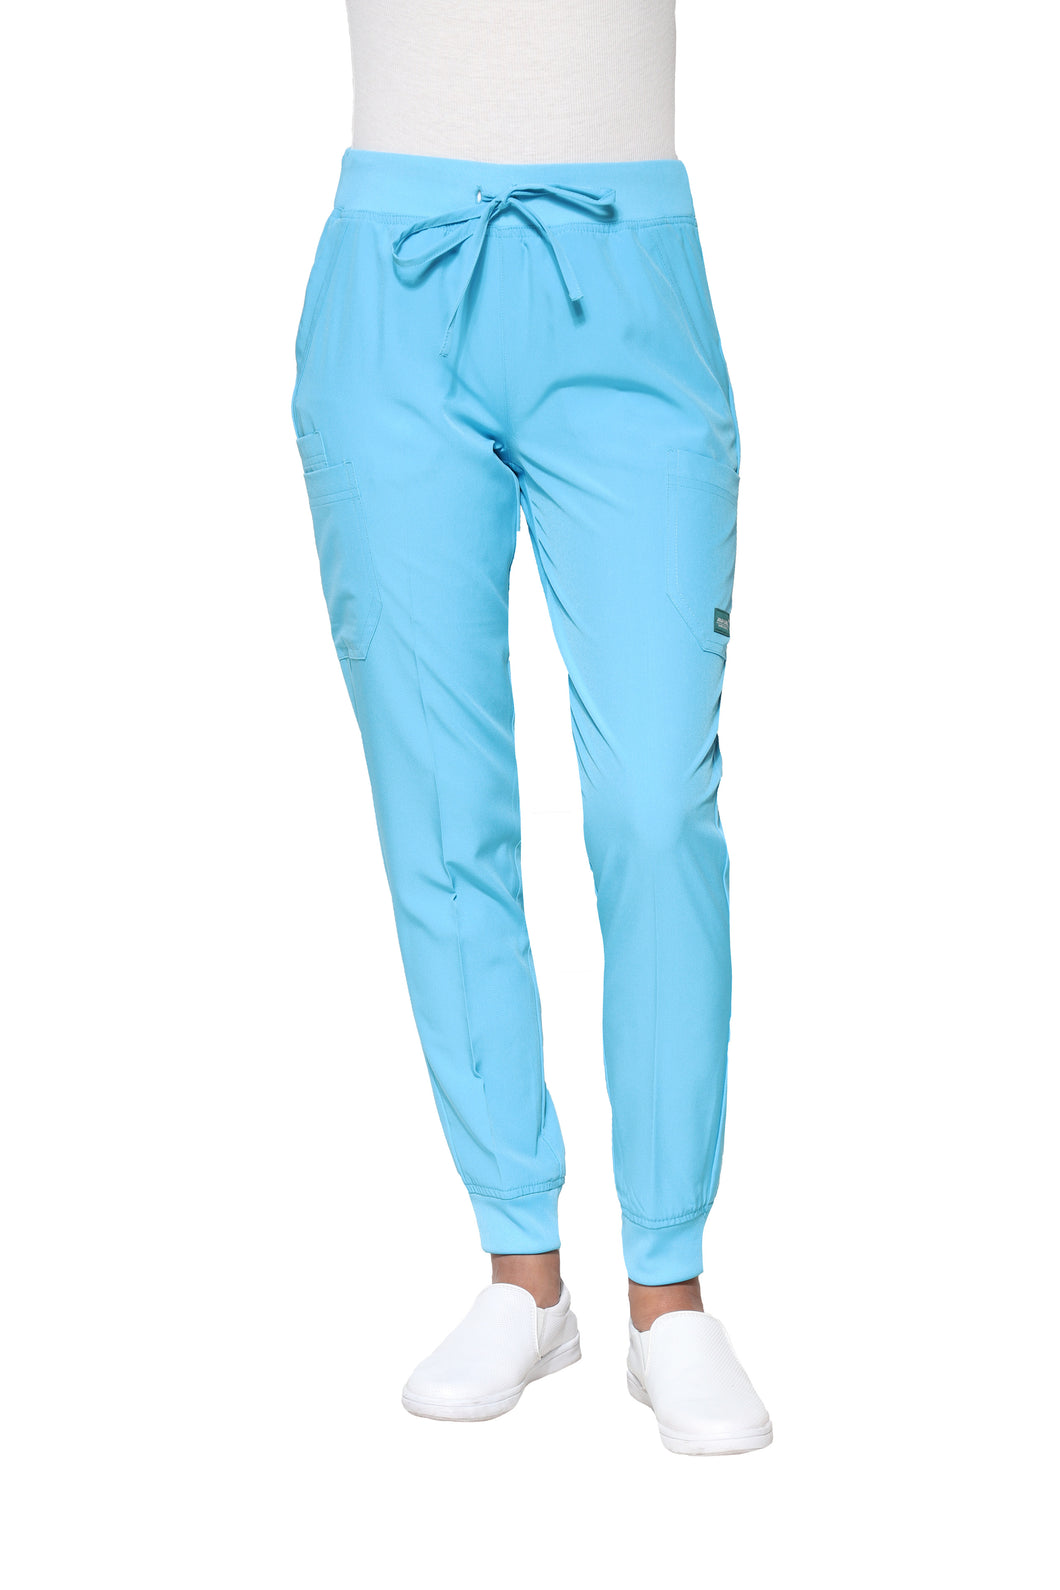 Pantalón Pant JOGGER EV-125 REPELENTE A FLUIDOS-Color AQUA Dama-Ana Isabel Uniformes